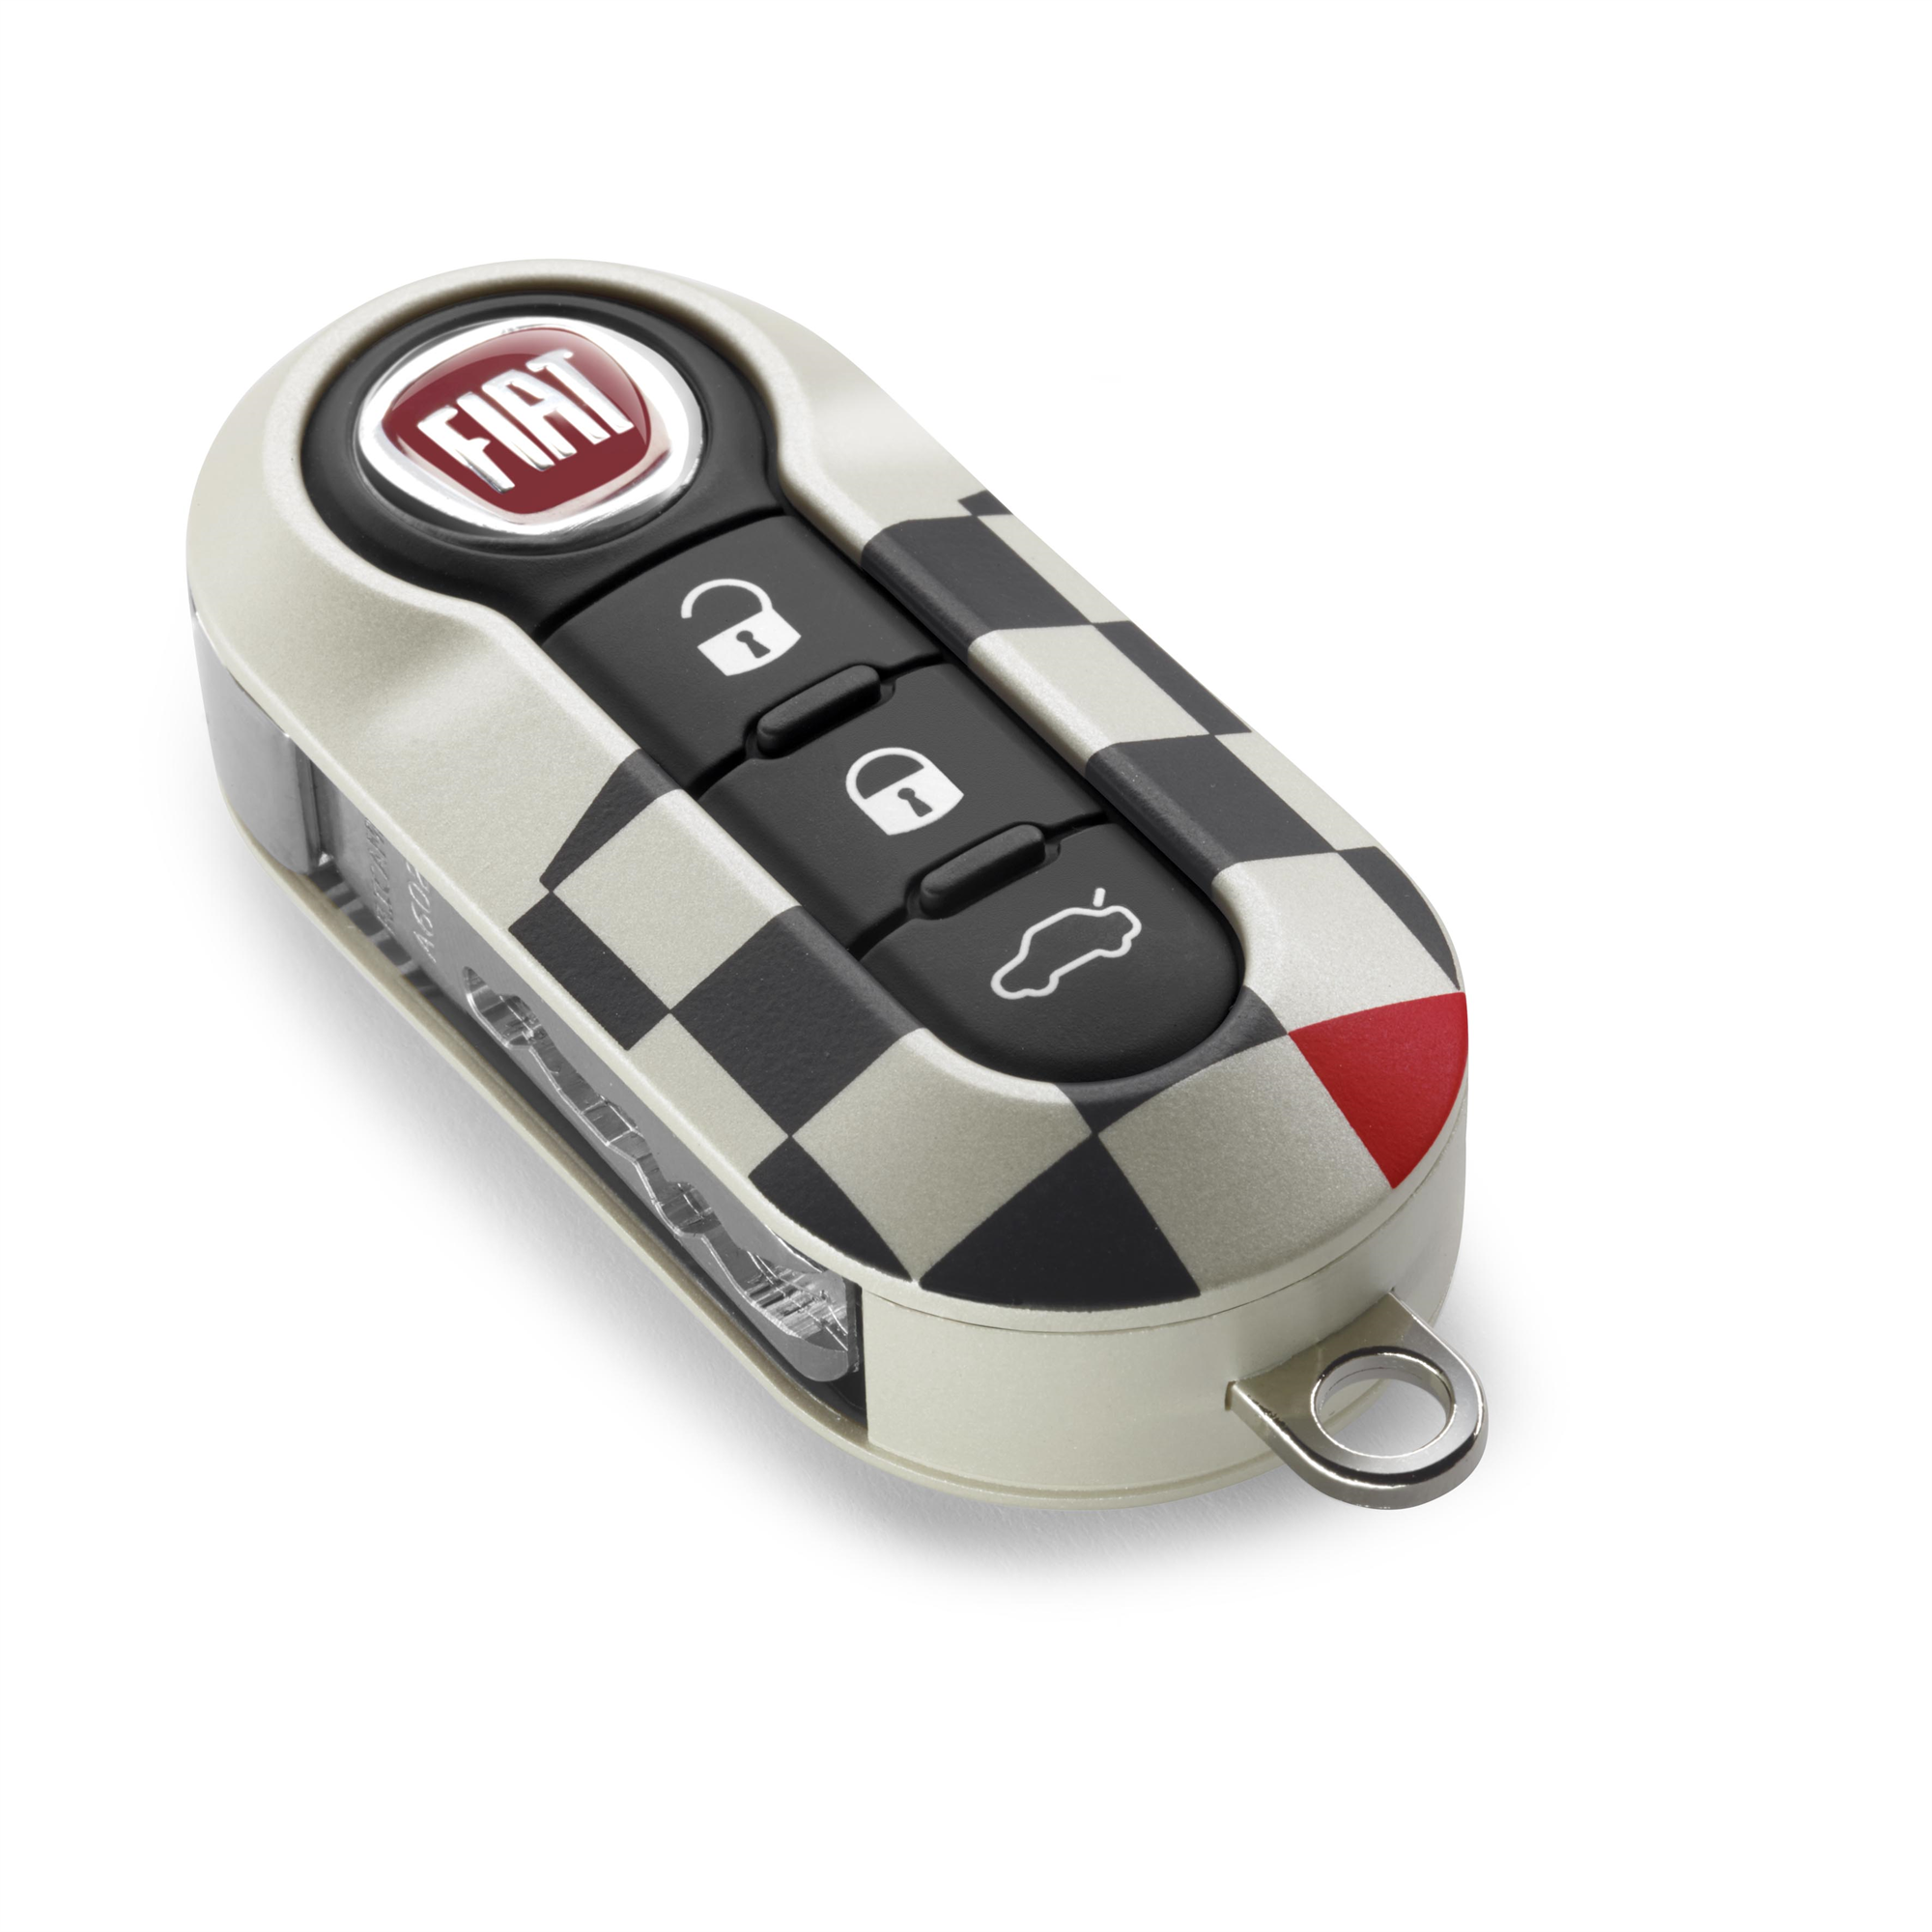 ACCESSOIRES ORIGINE FIAT - Stickers sport damier rouge-noir-blanc pour Fiat  500